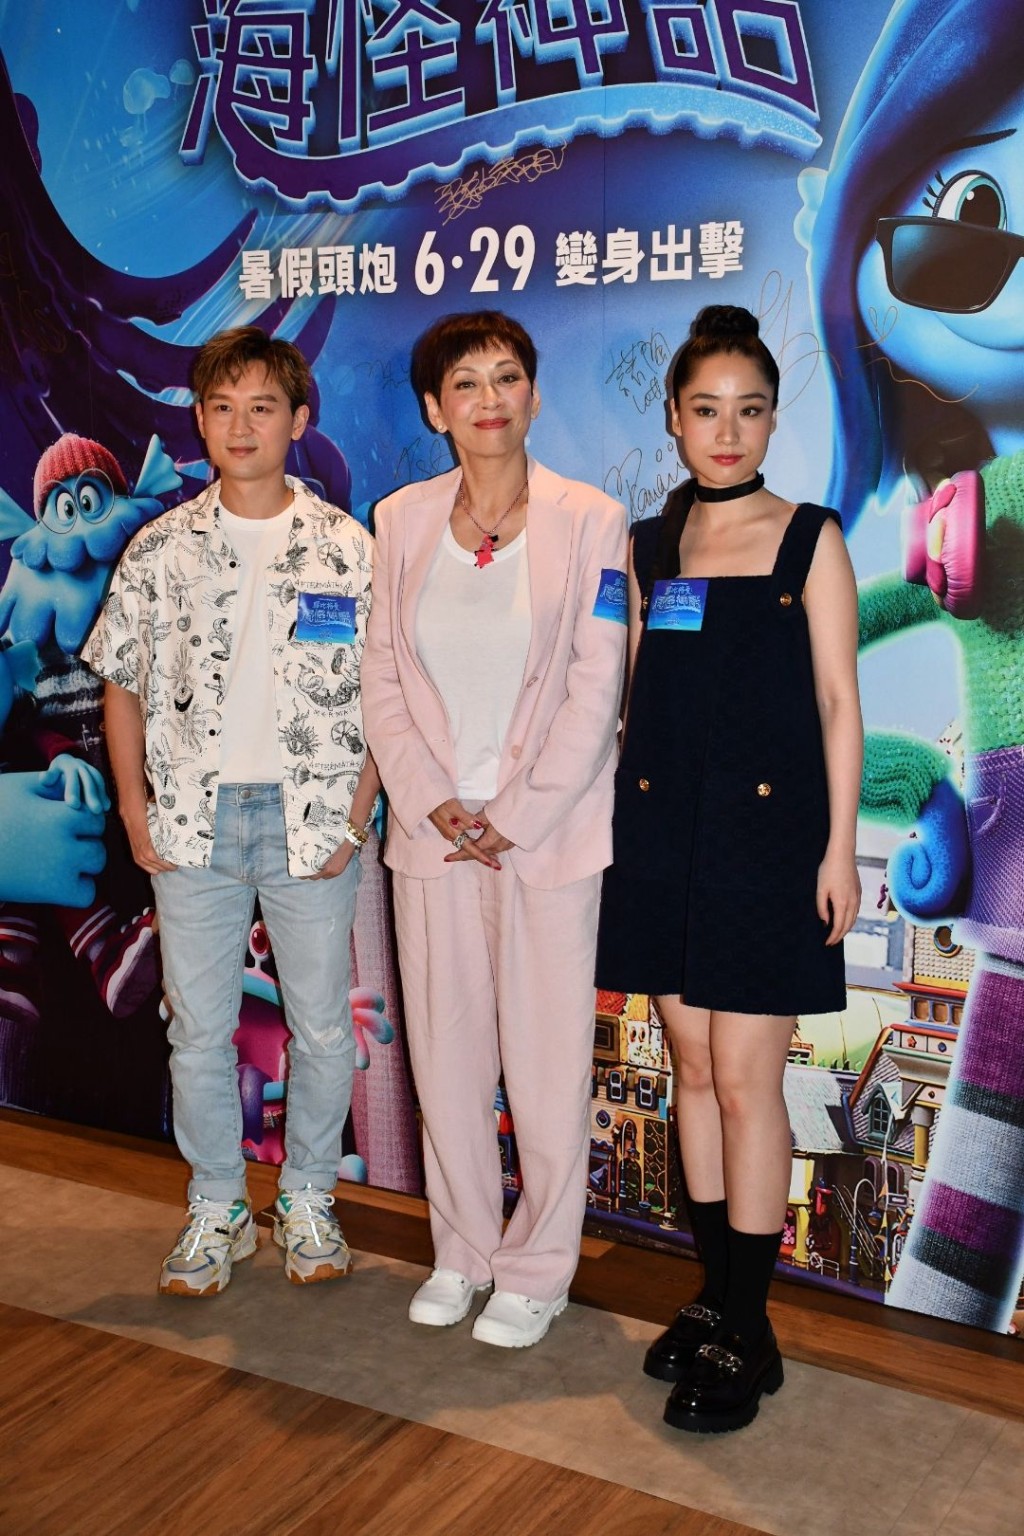 余安安、凌文龙和张蔓莎出席有份声演动画电影《露比格曼：海怪神话》首映礼。